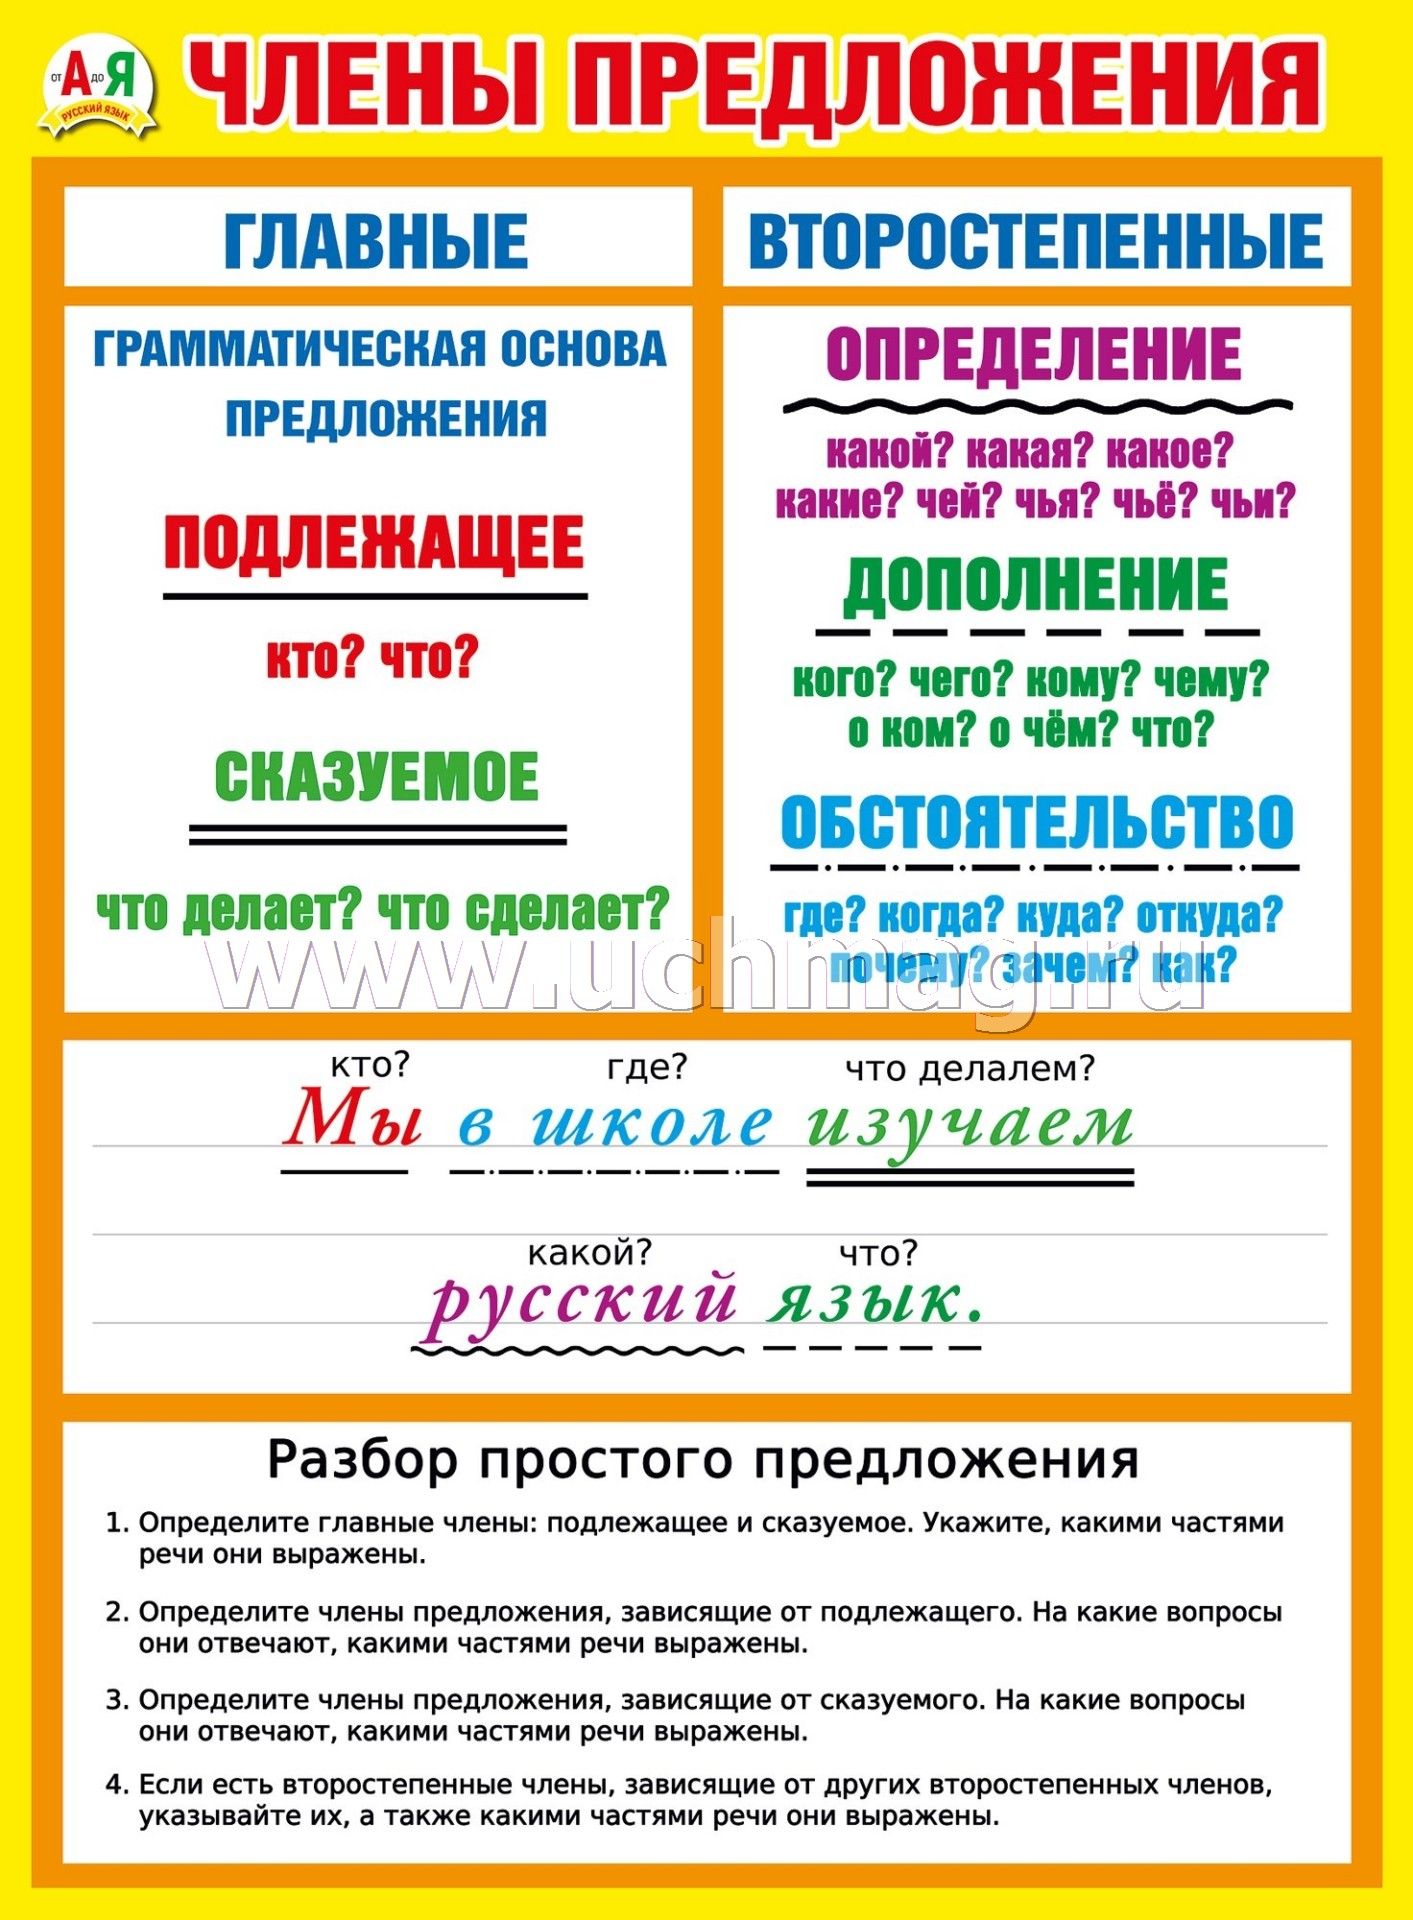 члены сказа в белорусском языке фото 104